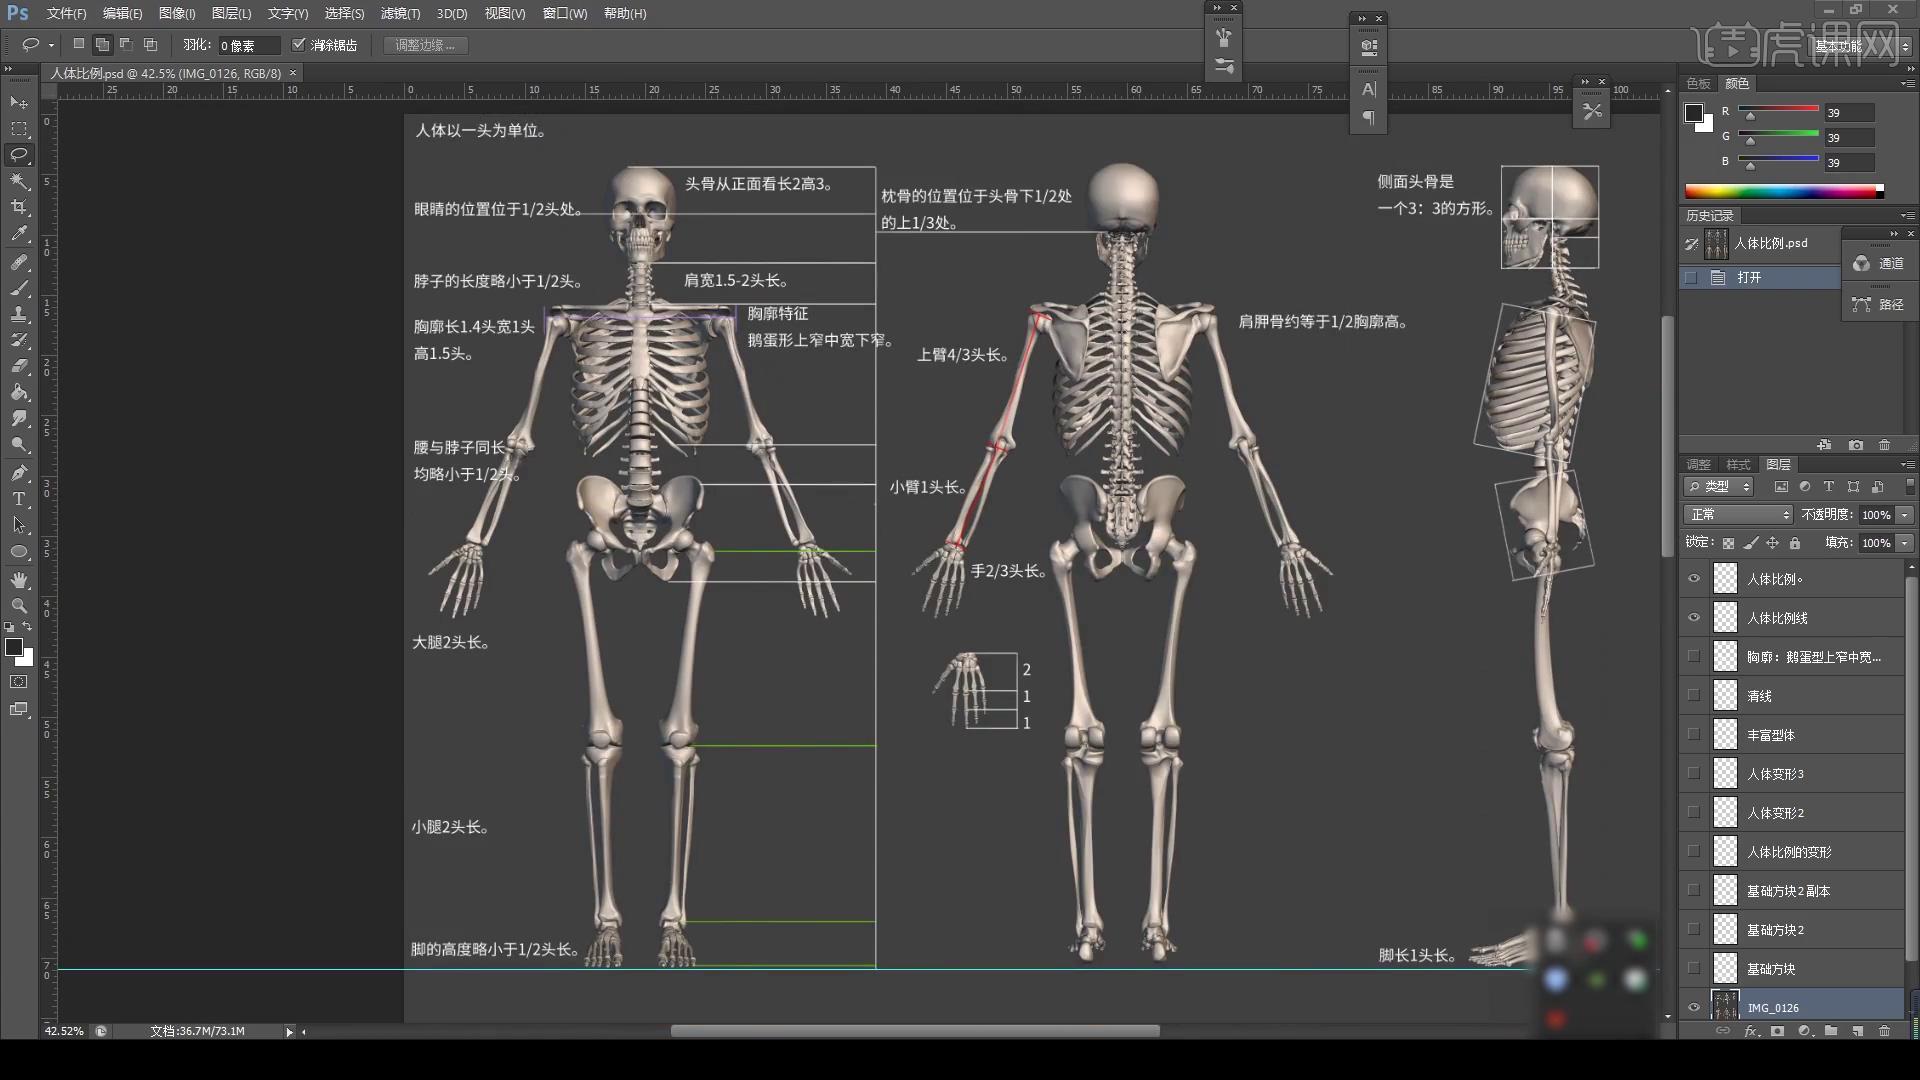 人体肝脏解剖动画视频素材,创意视觉视频素材下载,高清3840X2160视频素材下载,凌点视频素材网,编号:313057